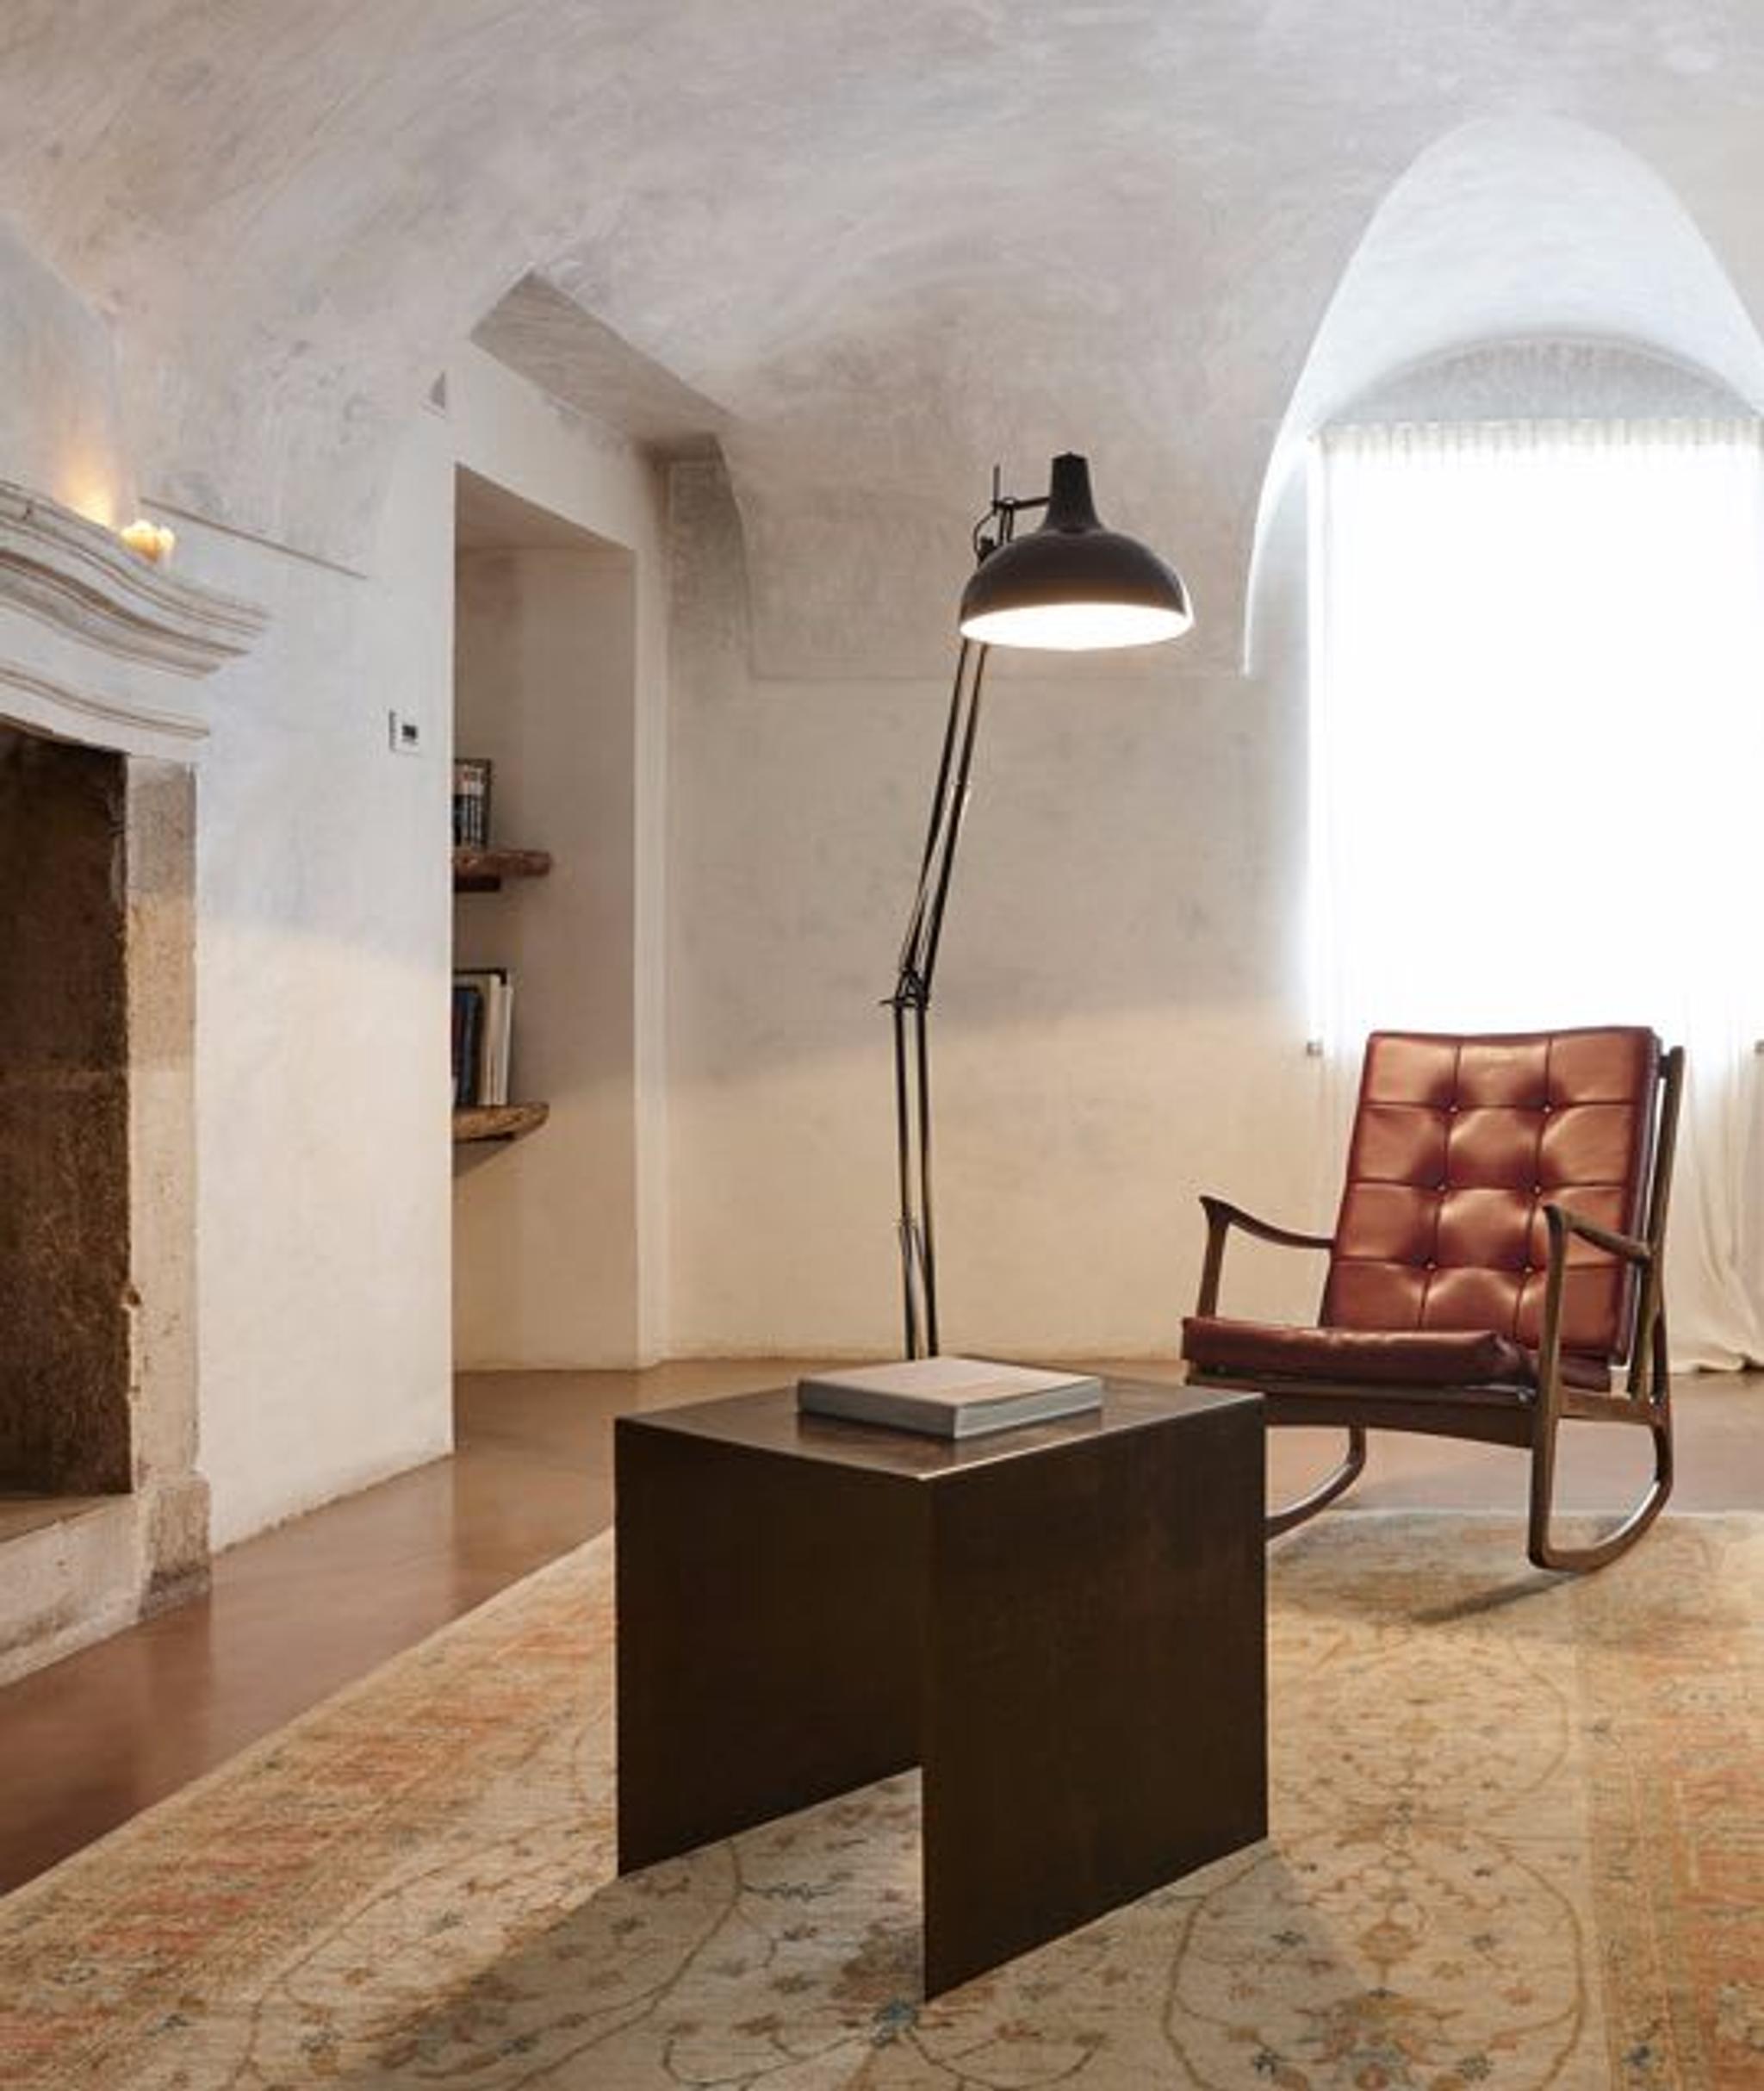 Los elementos de decoración y el mobiliario fueron elegidos personalmente por Niko y Cristiana Romito.